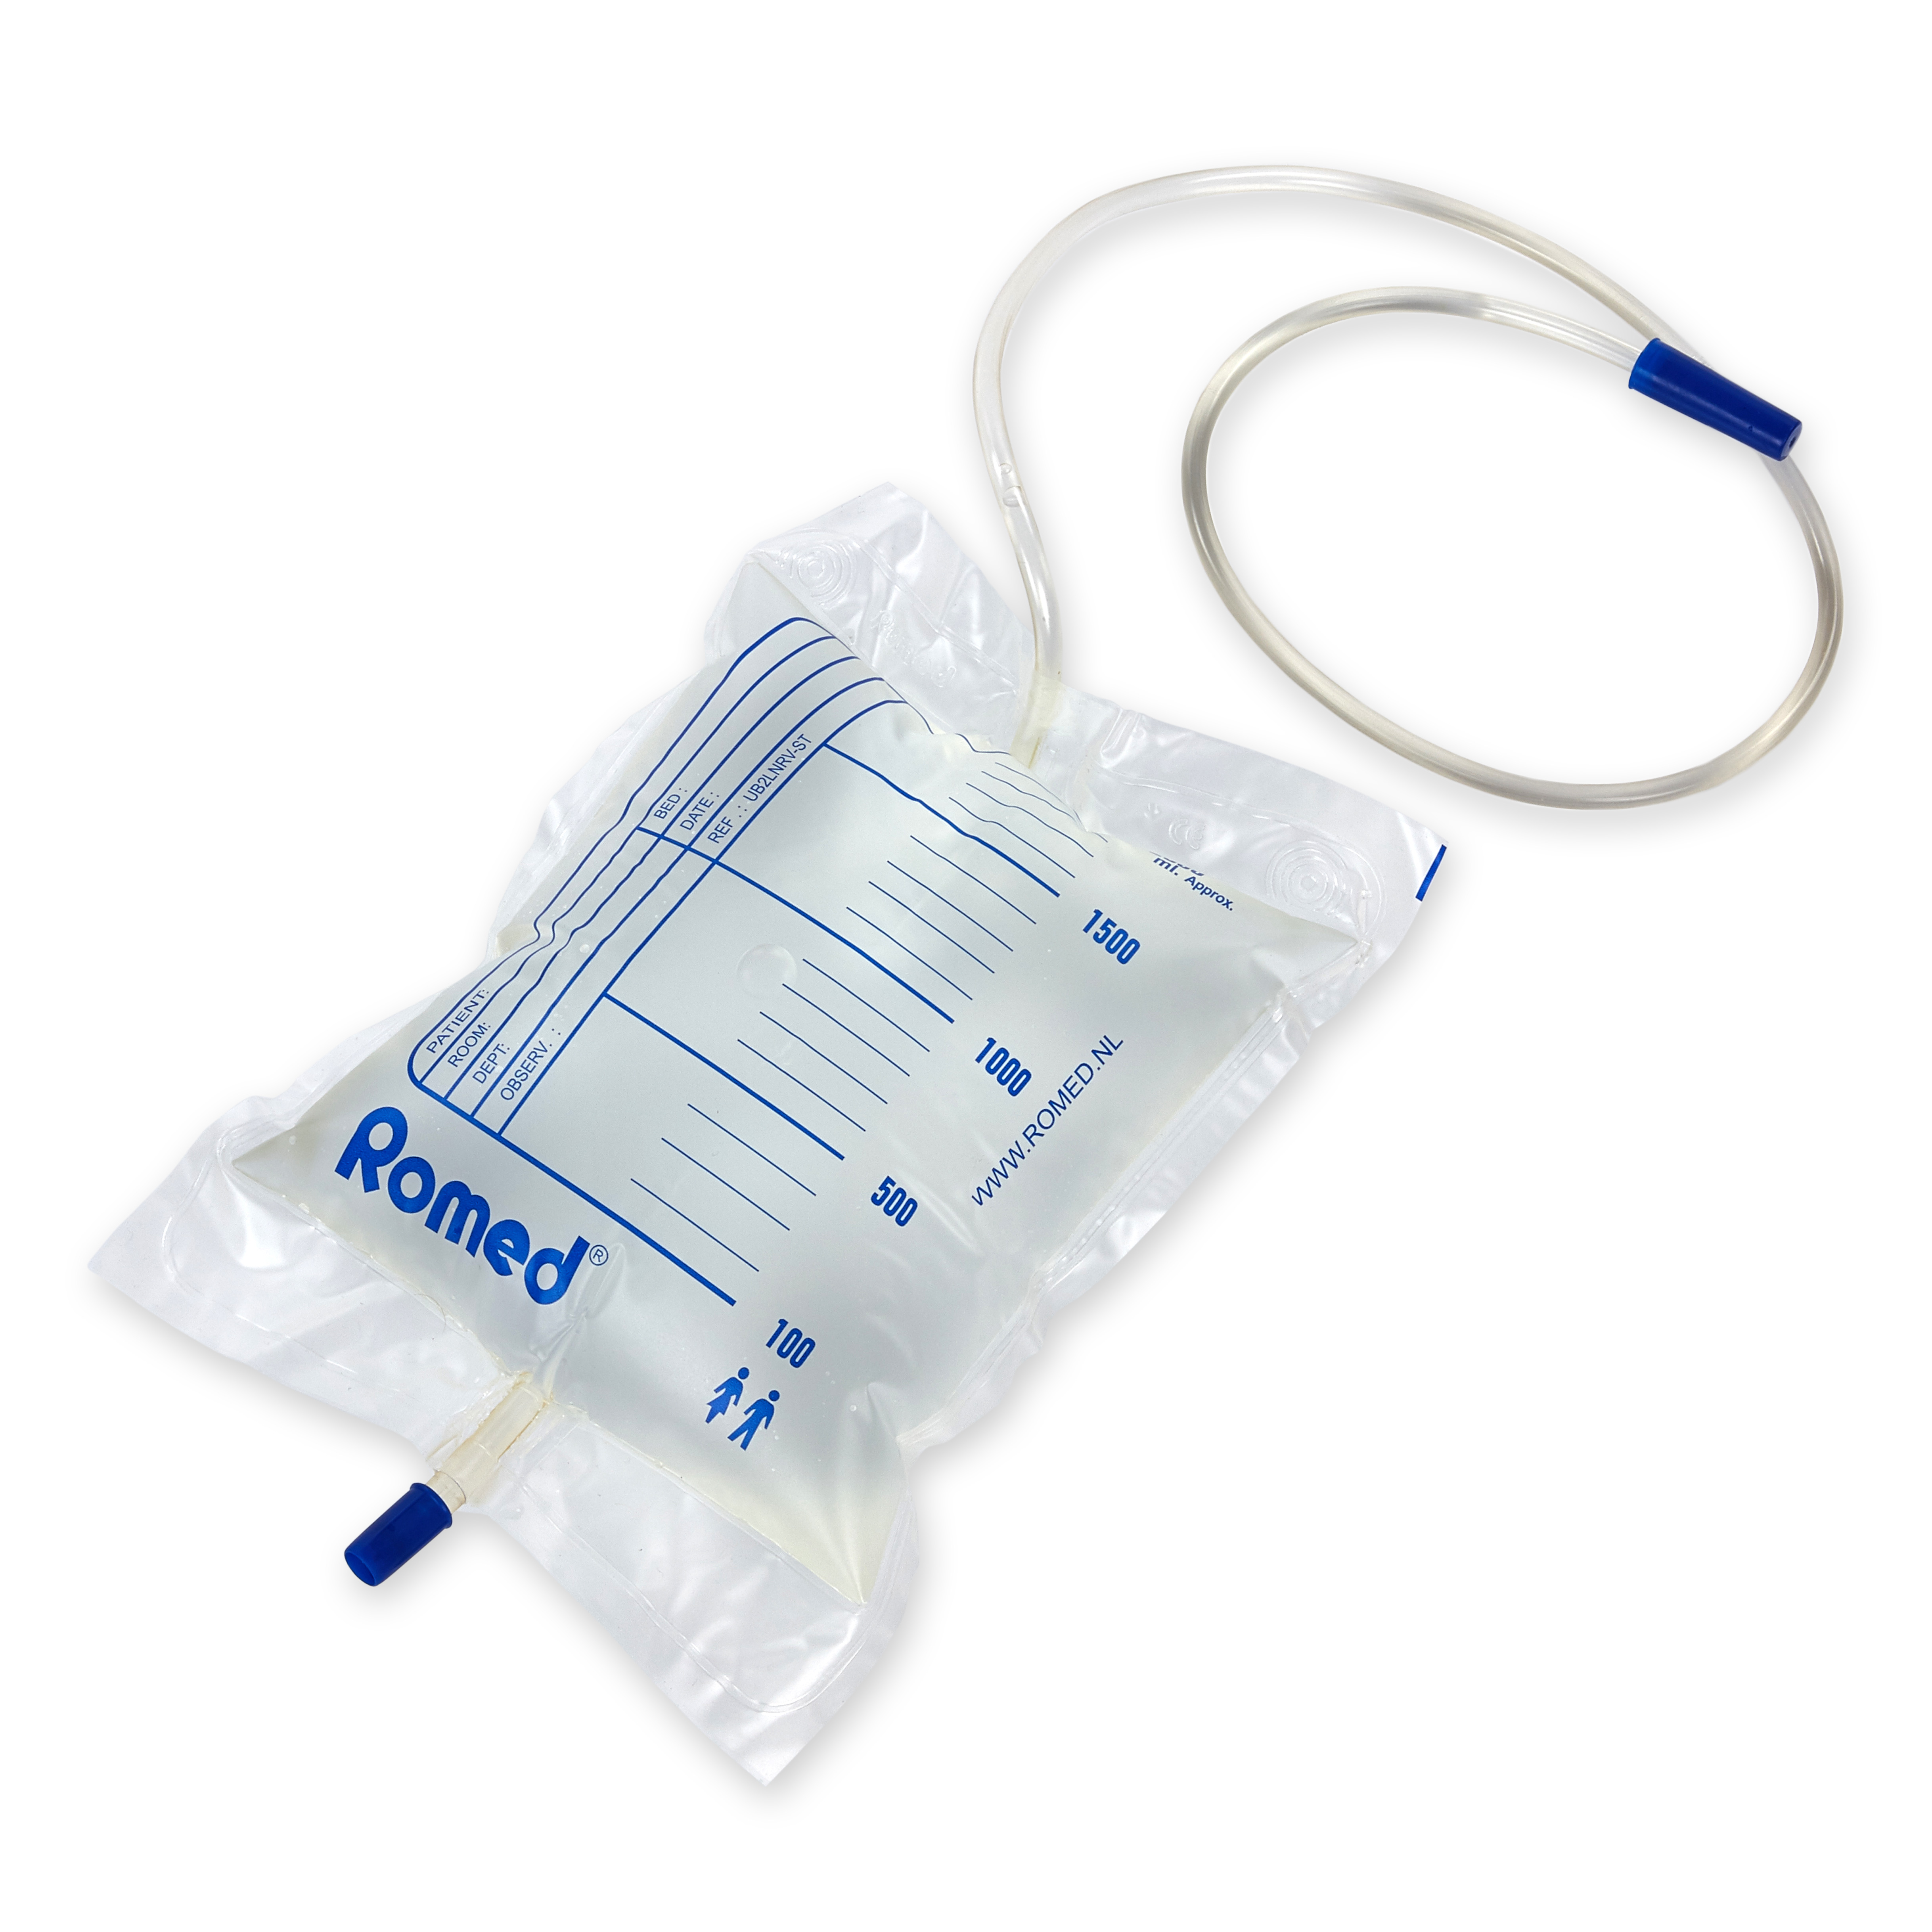 UB2LNRV-ST Poches à urine Romed, 2 litres, sans clapet antiretour ou dispositif de vidange par le bas, tube de 90 cm, conditionnées individuellement dans un sac plastique, stériles, 250 unités par carton.